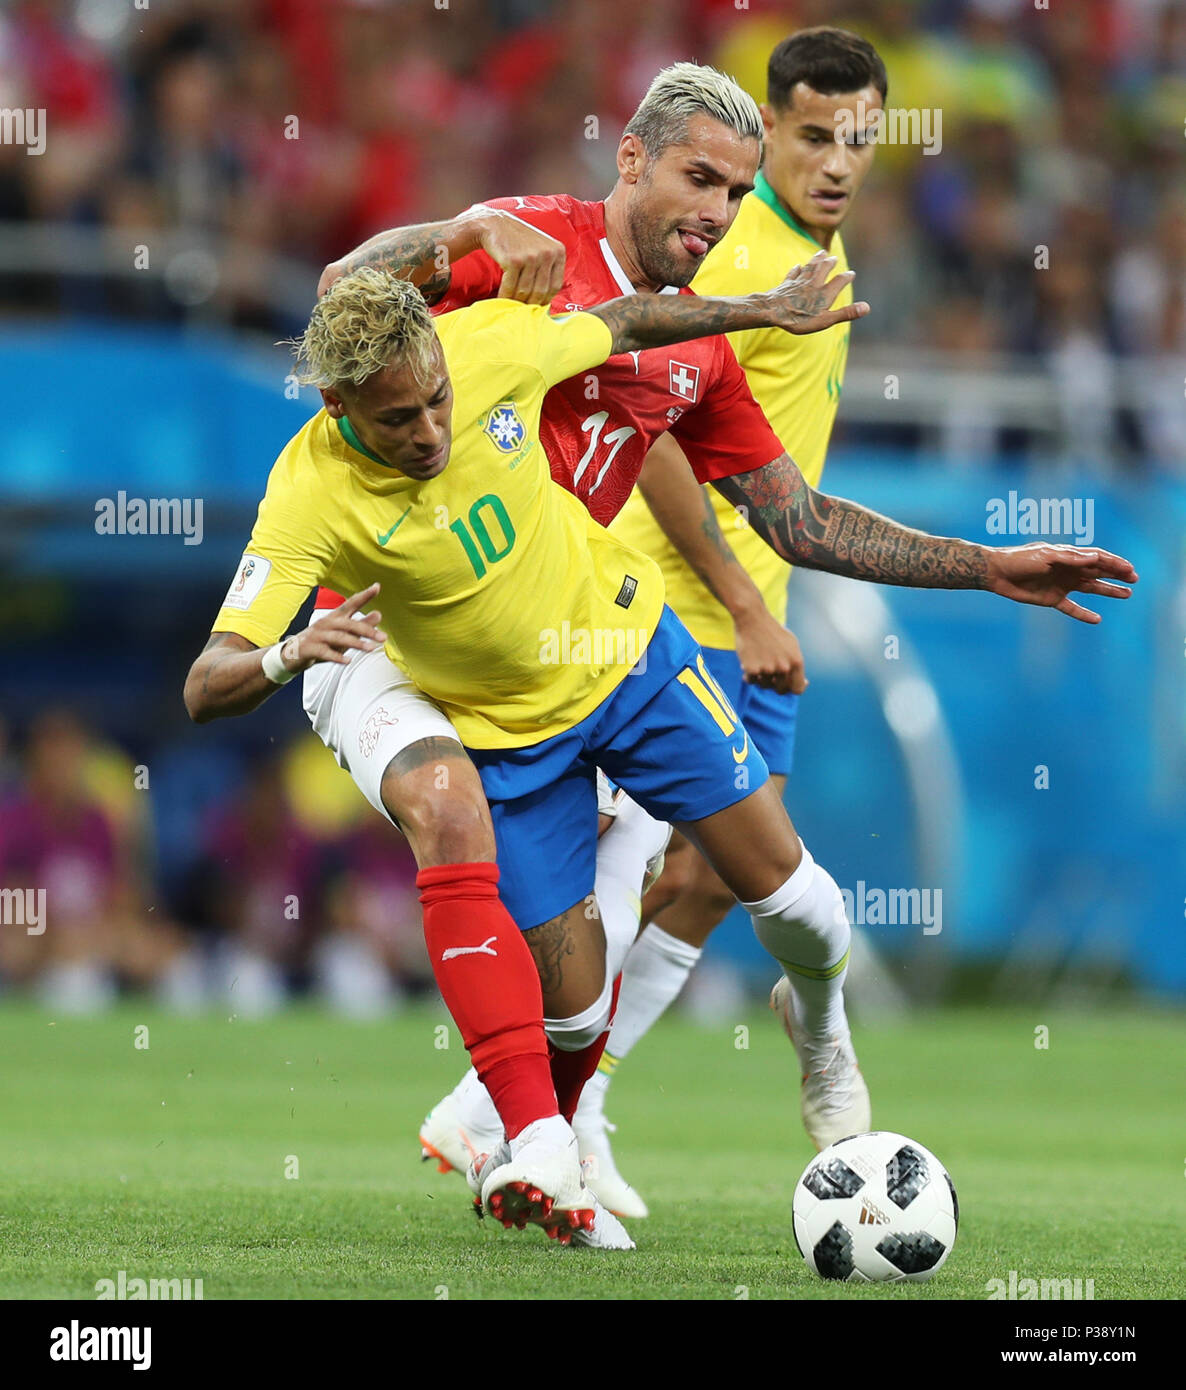 Rostov, Rusia, 17 de junio, 2018. Neymar (L) de Brasil compite con Valon Behrami (C) de Suiza durante un grupo e partido entre Brasil y Suiza en la Copa Mundial de la FIFA 2018 en Rostov-on-Don, Rusia, 17 de junio de 2018. Crédito: Lu Jinbo/Xinhua/Alamy Live News Foto de stock